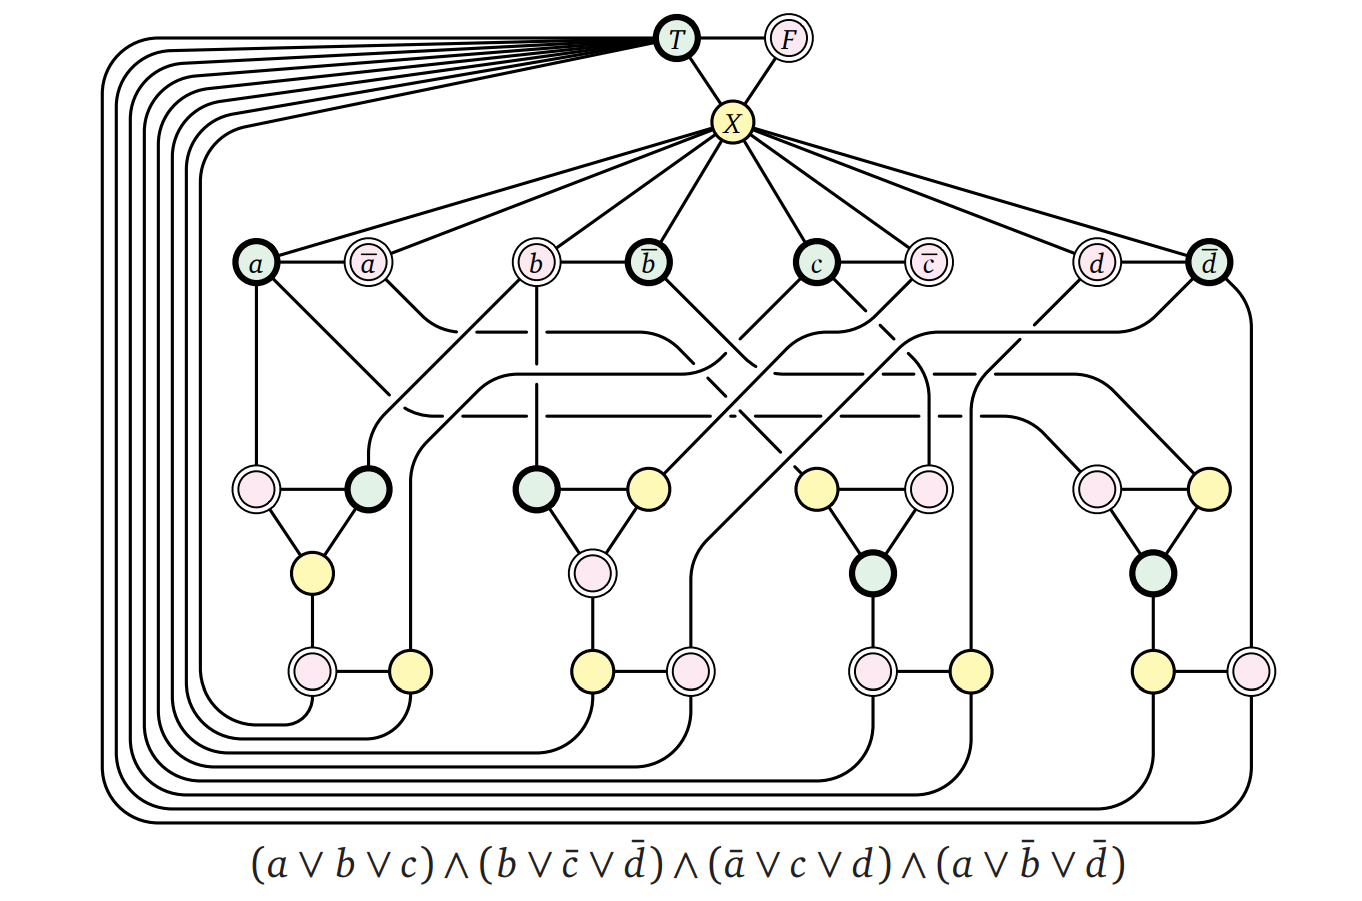 充足可能な 3CNF 式から作られる 3-彩色可能なグラフ